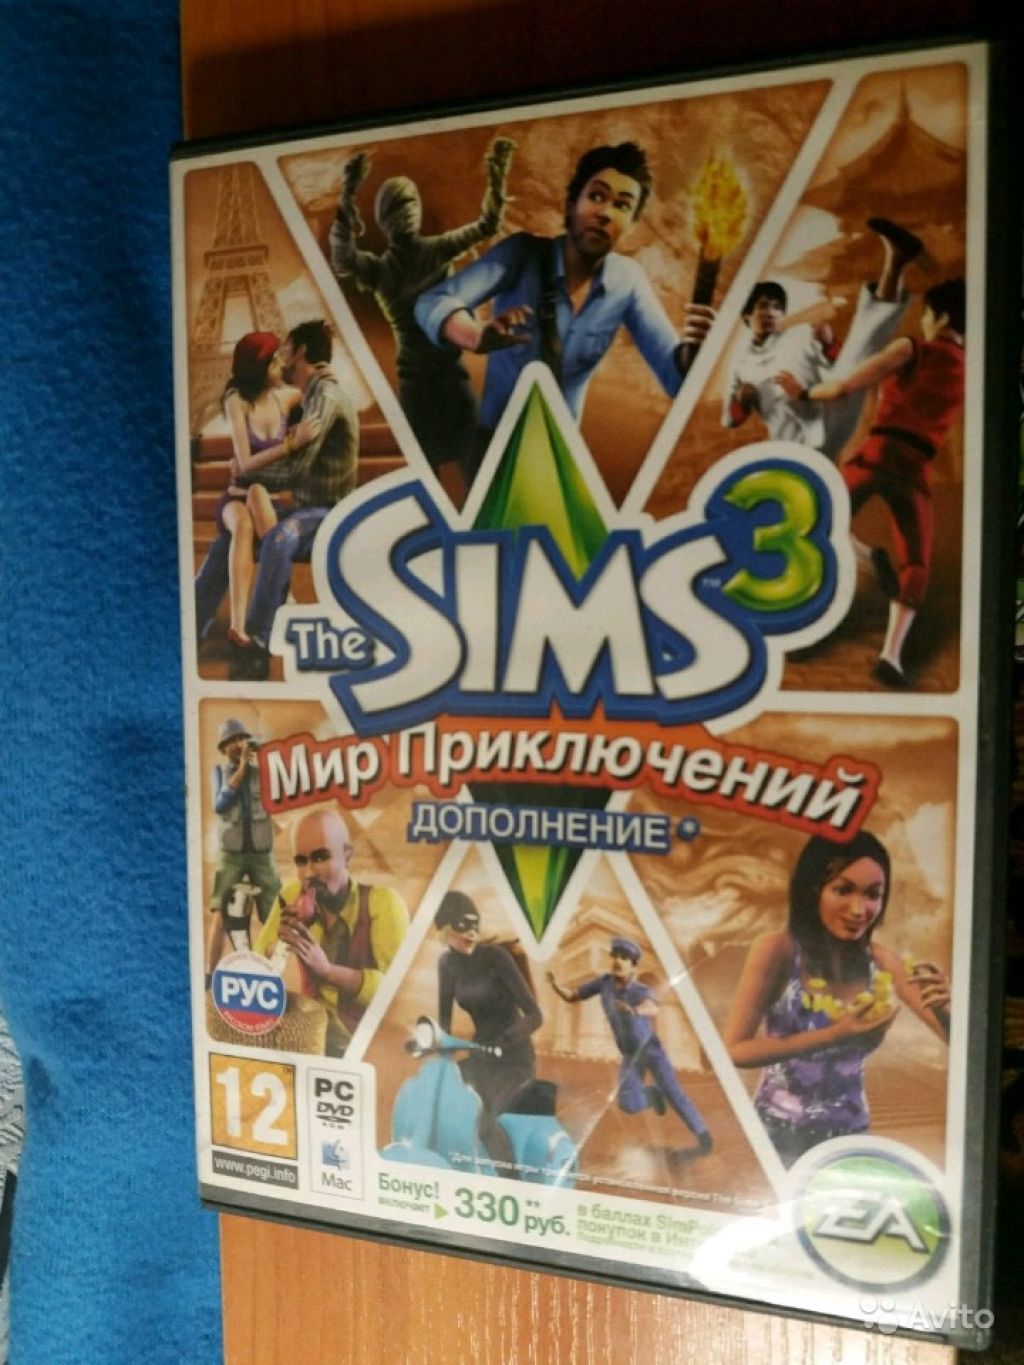 The Sims 3 в Москве. Фото 1